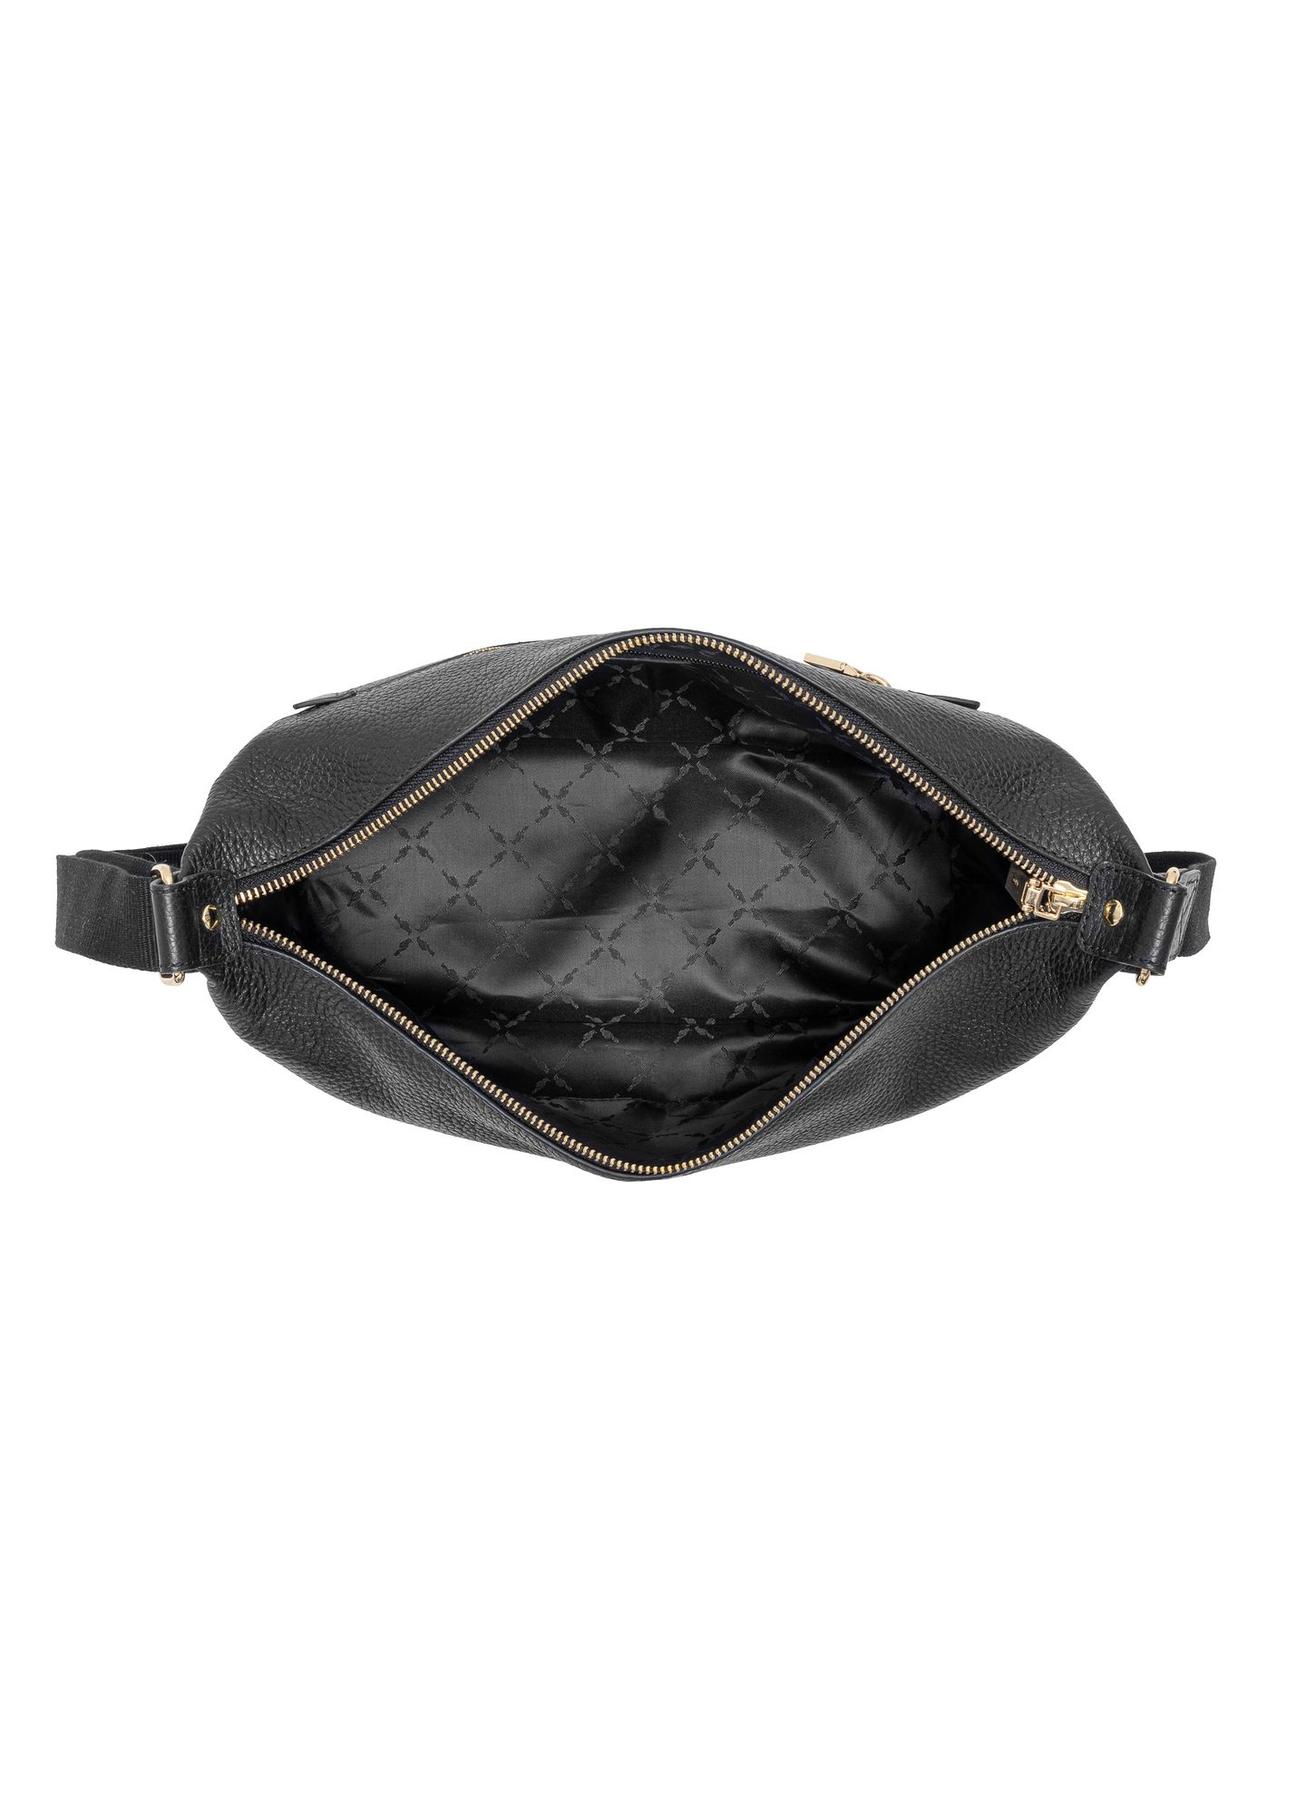 Skórzana torebka damska w kolorze czarnym TORES-0984-99(W24)